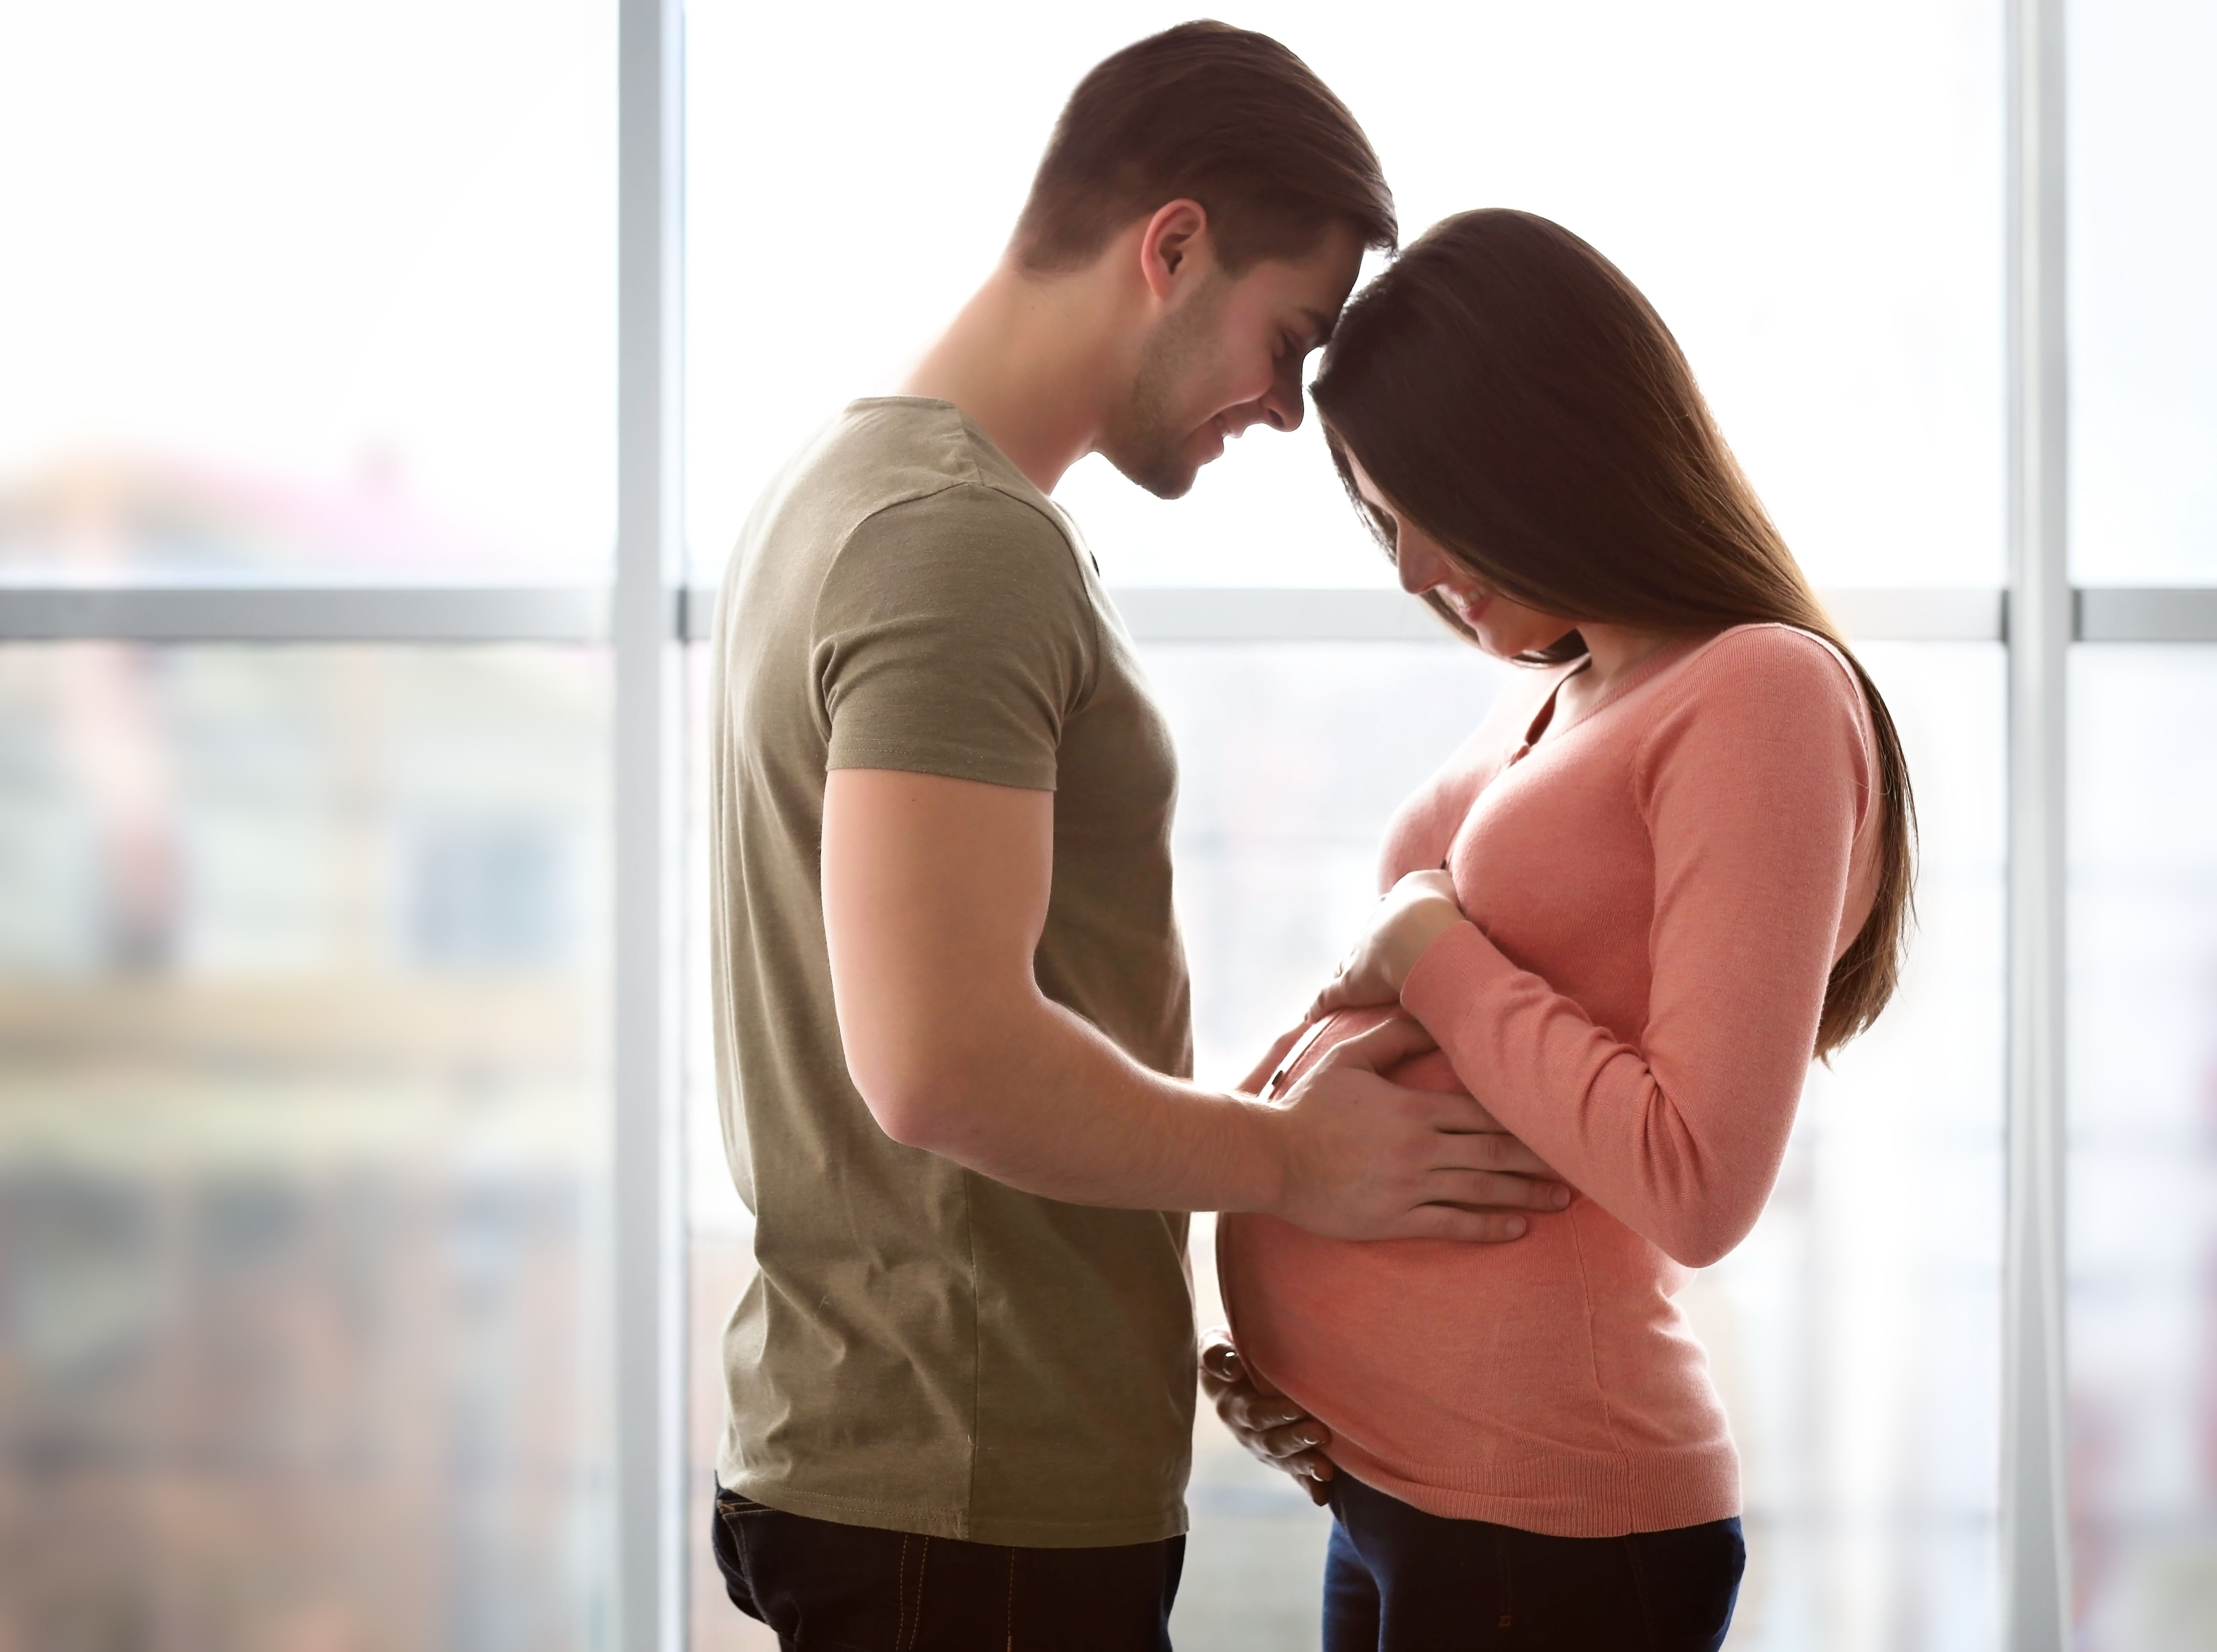 Une femme regarde son ventre de femme enceinte tandis que son mari pose son front sur le sien | Source : Shutterstock